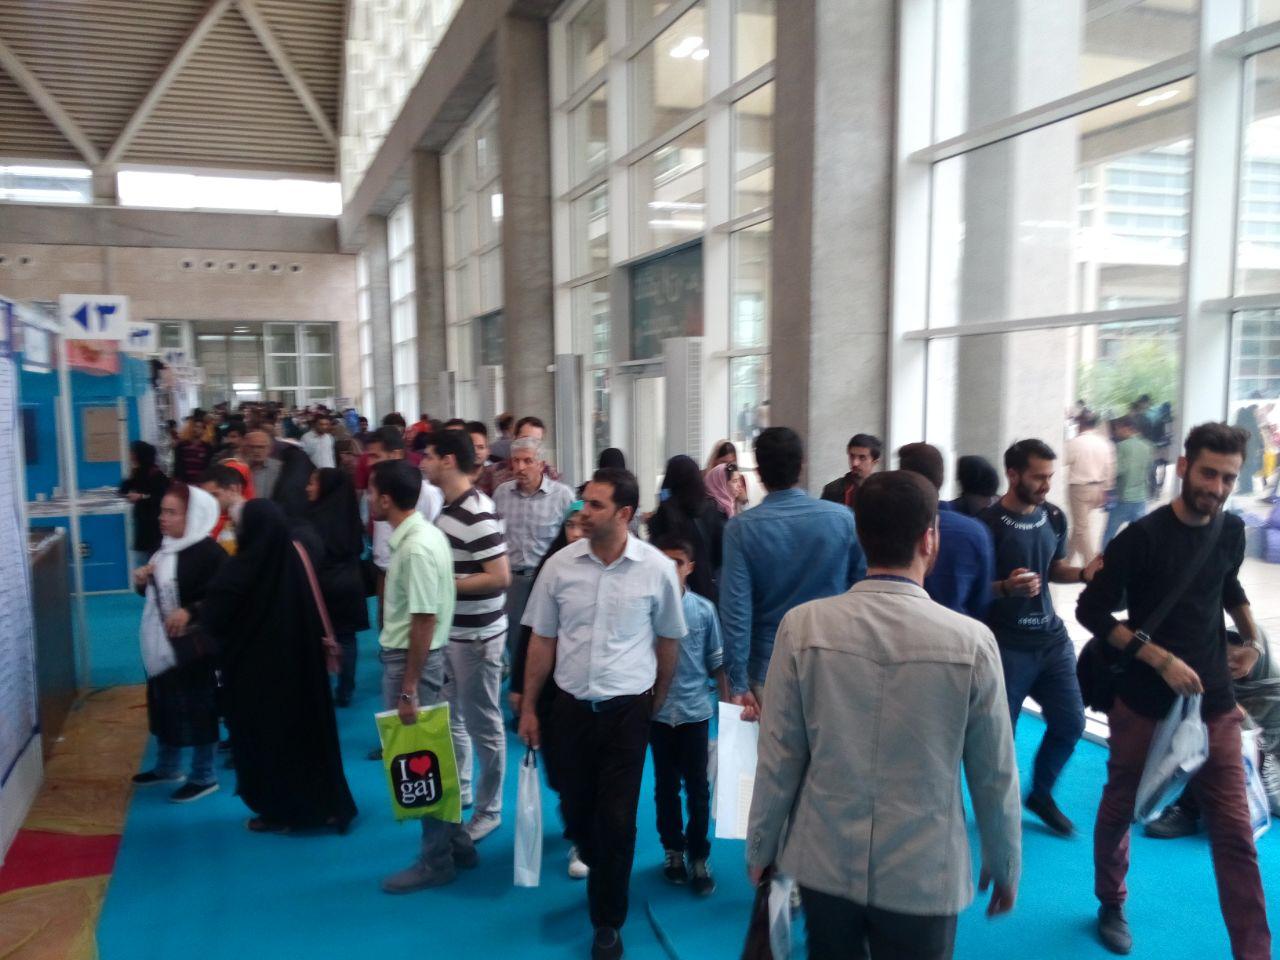 استقبال مردم از دومین روز نمایشگاه کتاب تهران/نارضایتی از نبود استراحتگاه